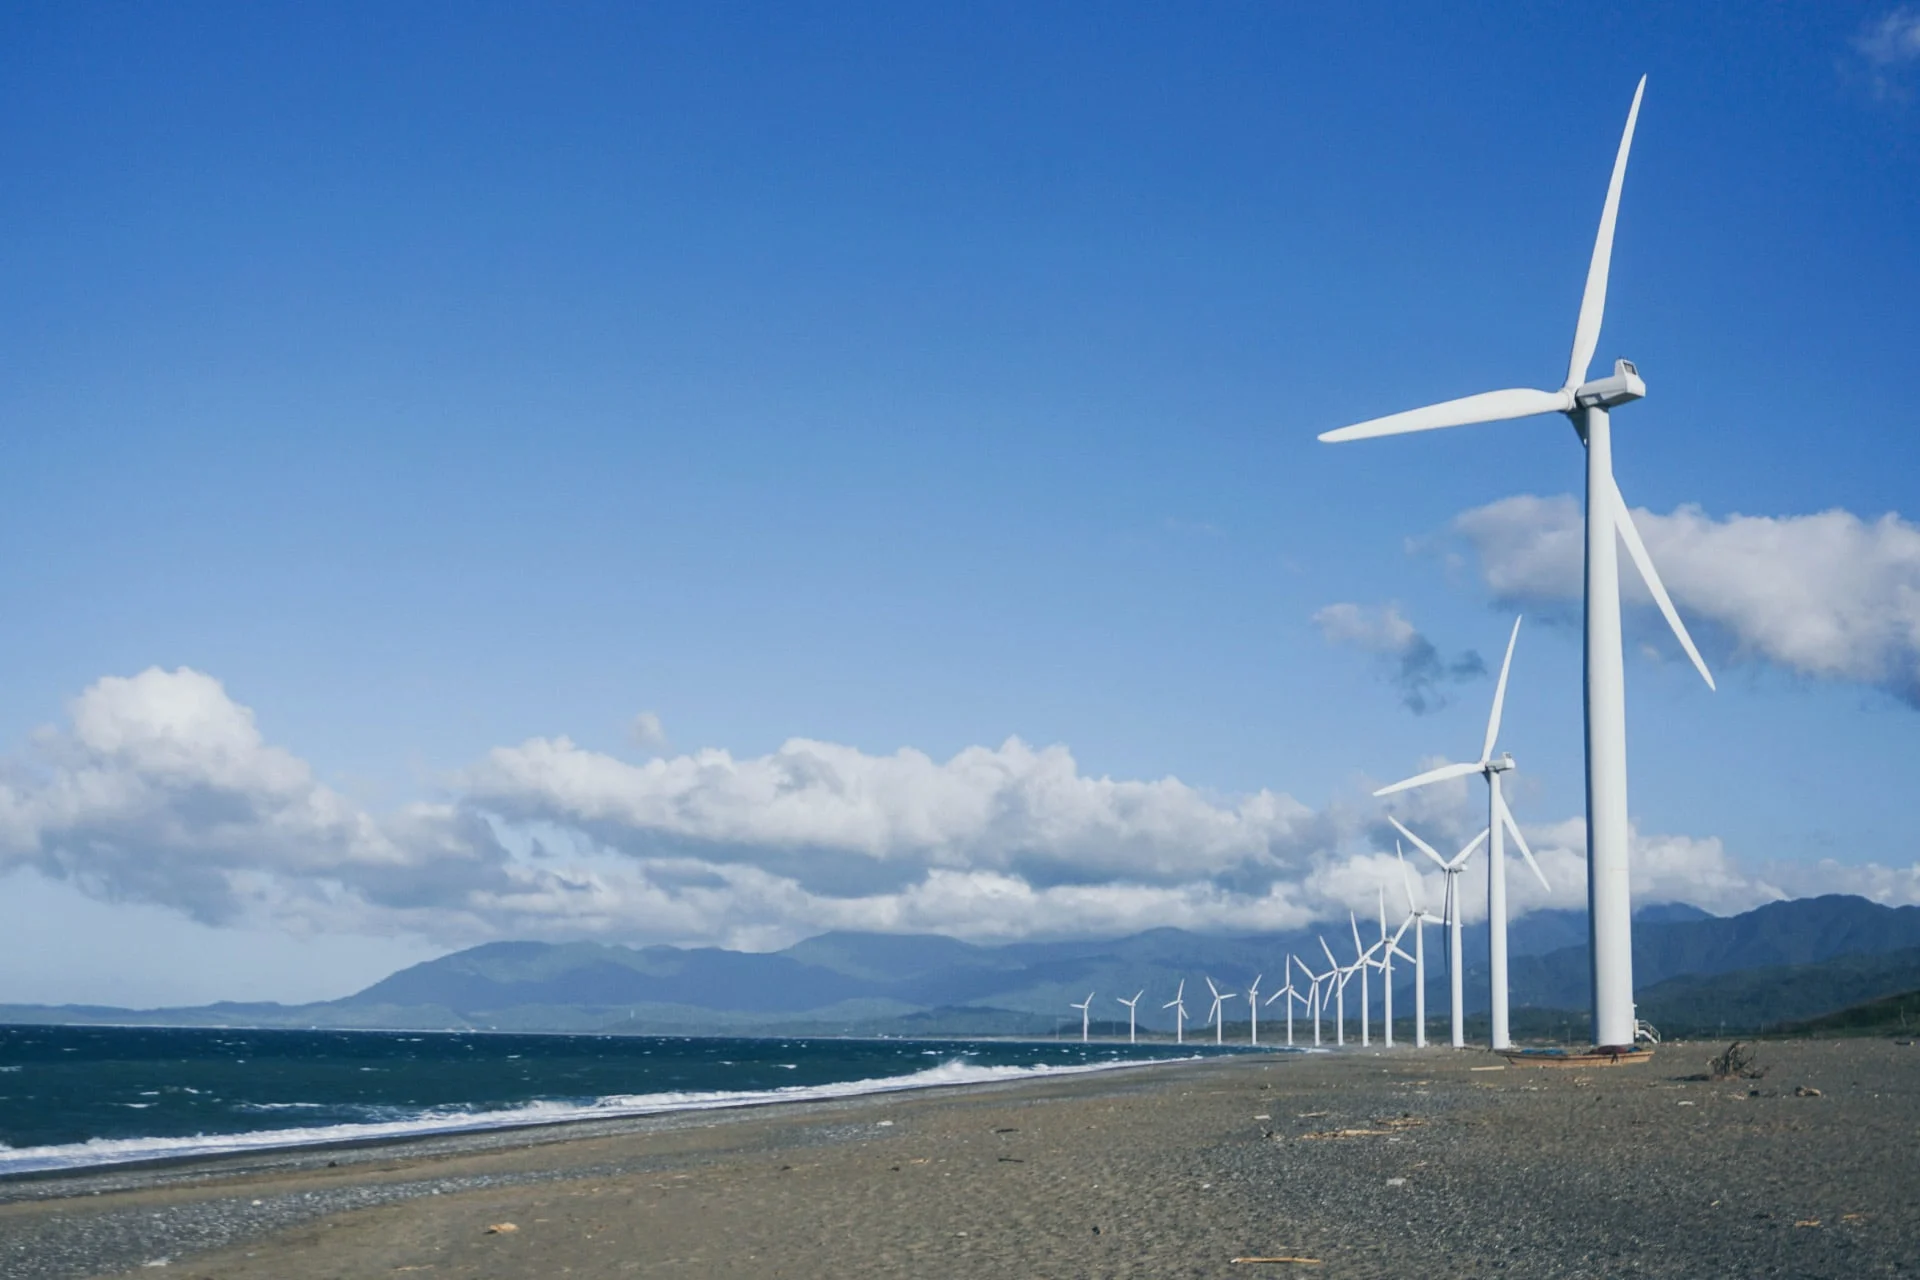 A group of wind turbines on a beach near the ocean.